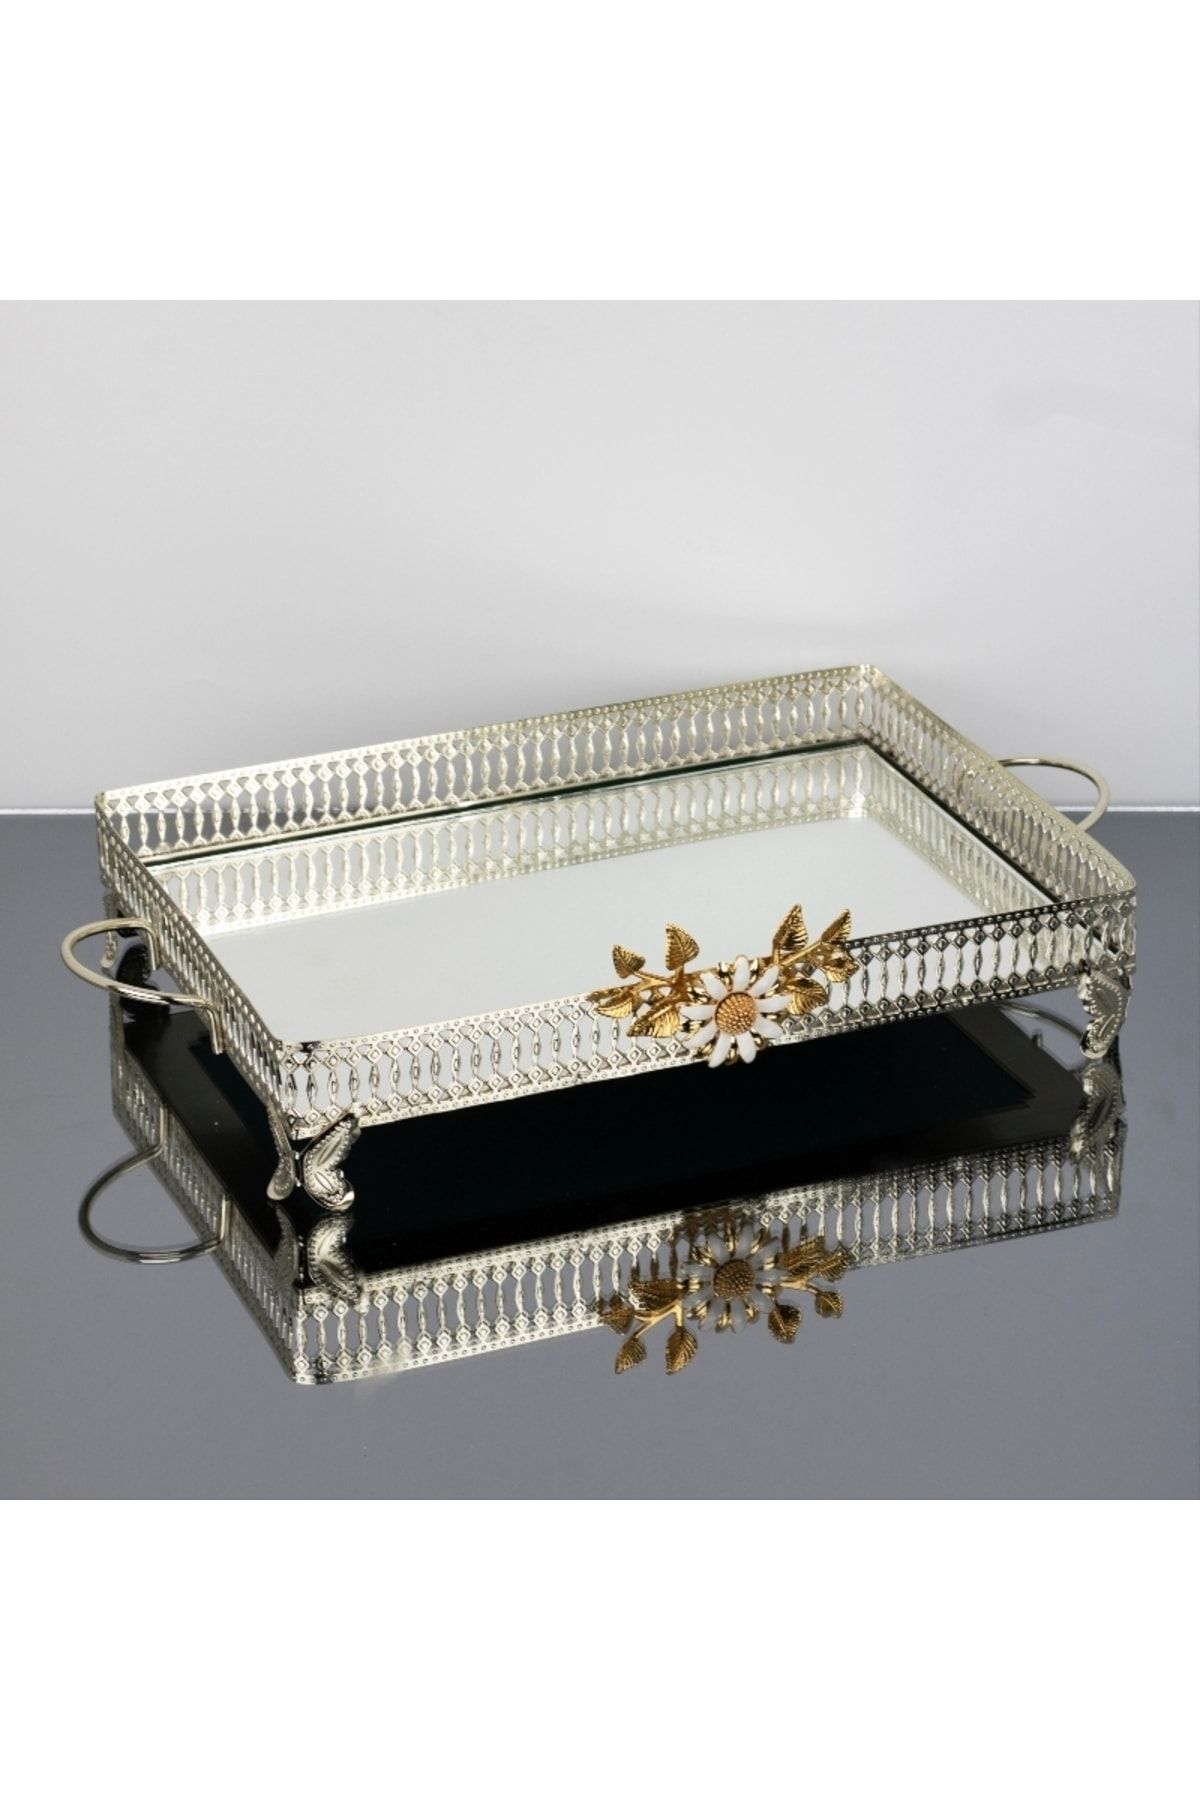 İnova Home Decor Firuze Çiçek Detaylı Gold - Gümüş Aynalı Sunum - Tepsisi - Çay Tepsisi 37 X 26 Cm - Büyük Boy